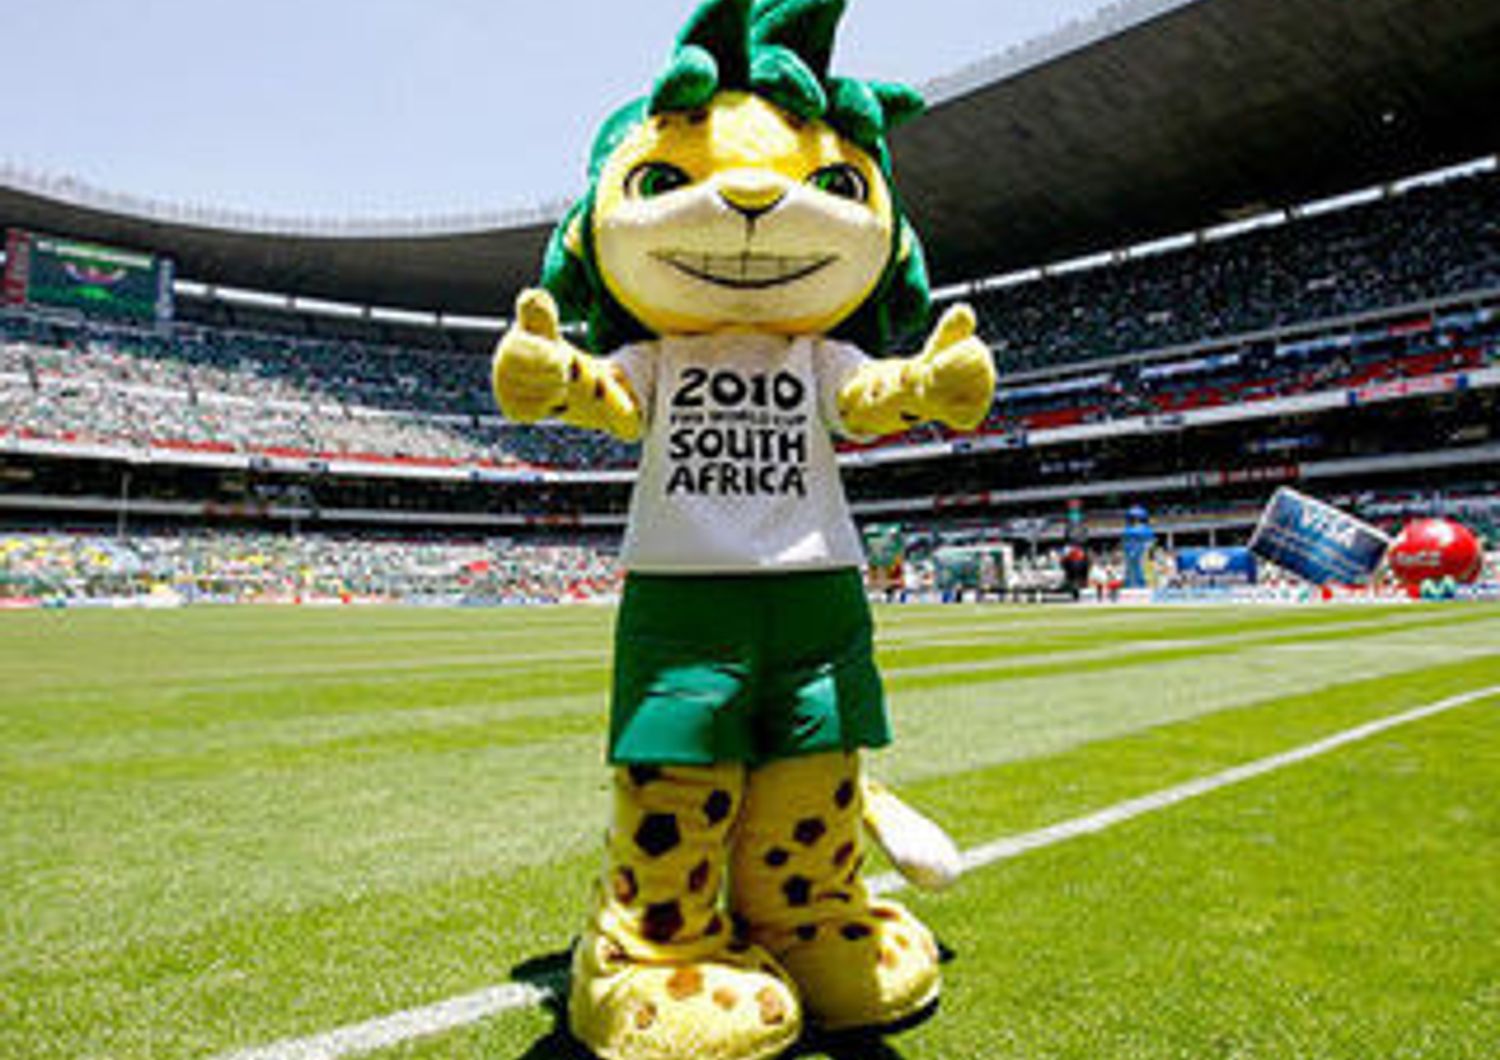 MONDIALI 2010: FIFA BLOCCA PRODUZIONE MASCOTTE 'MADE IN CHINA'